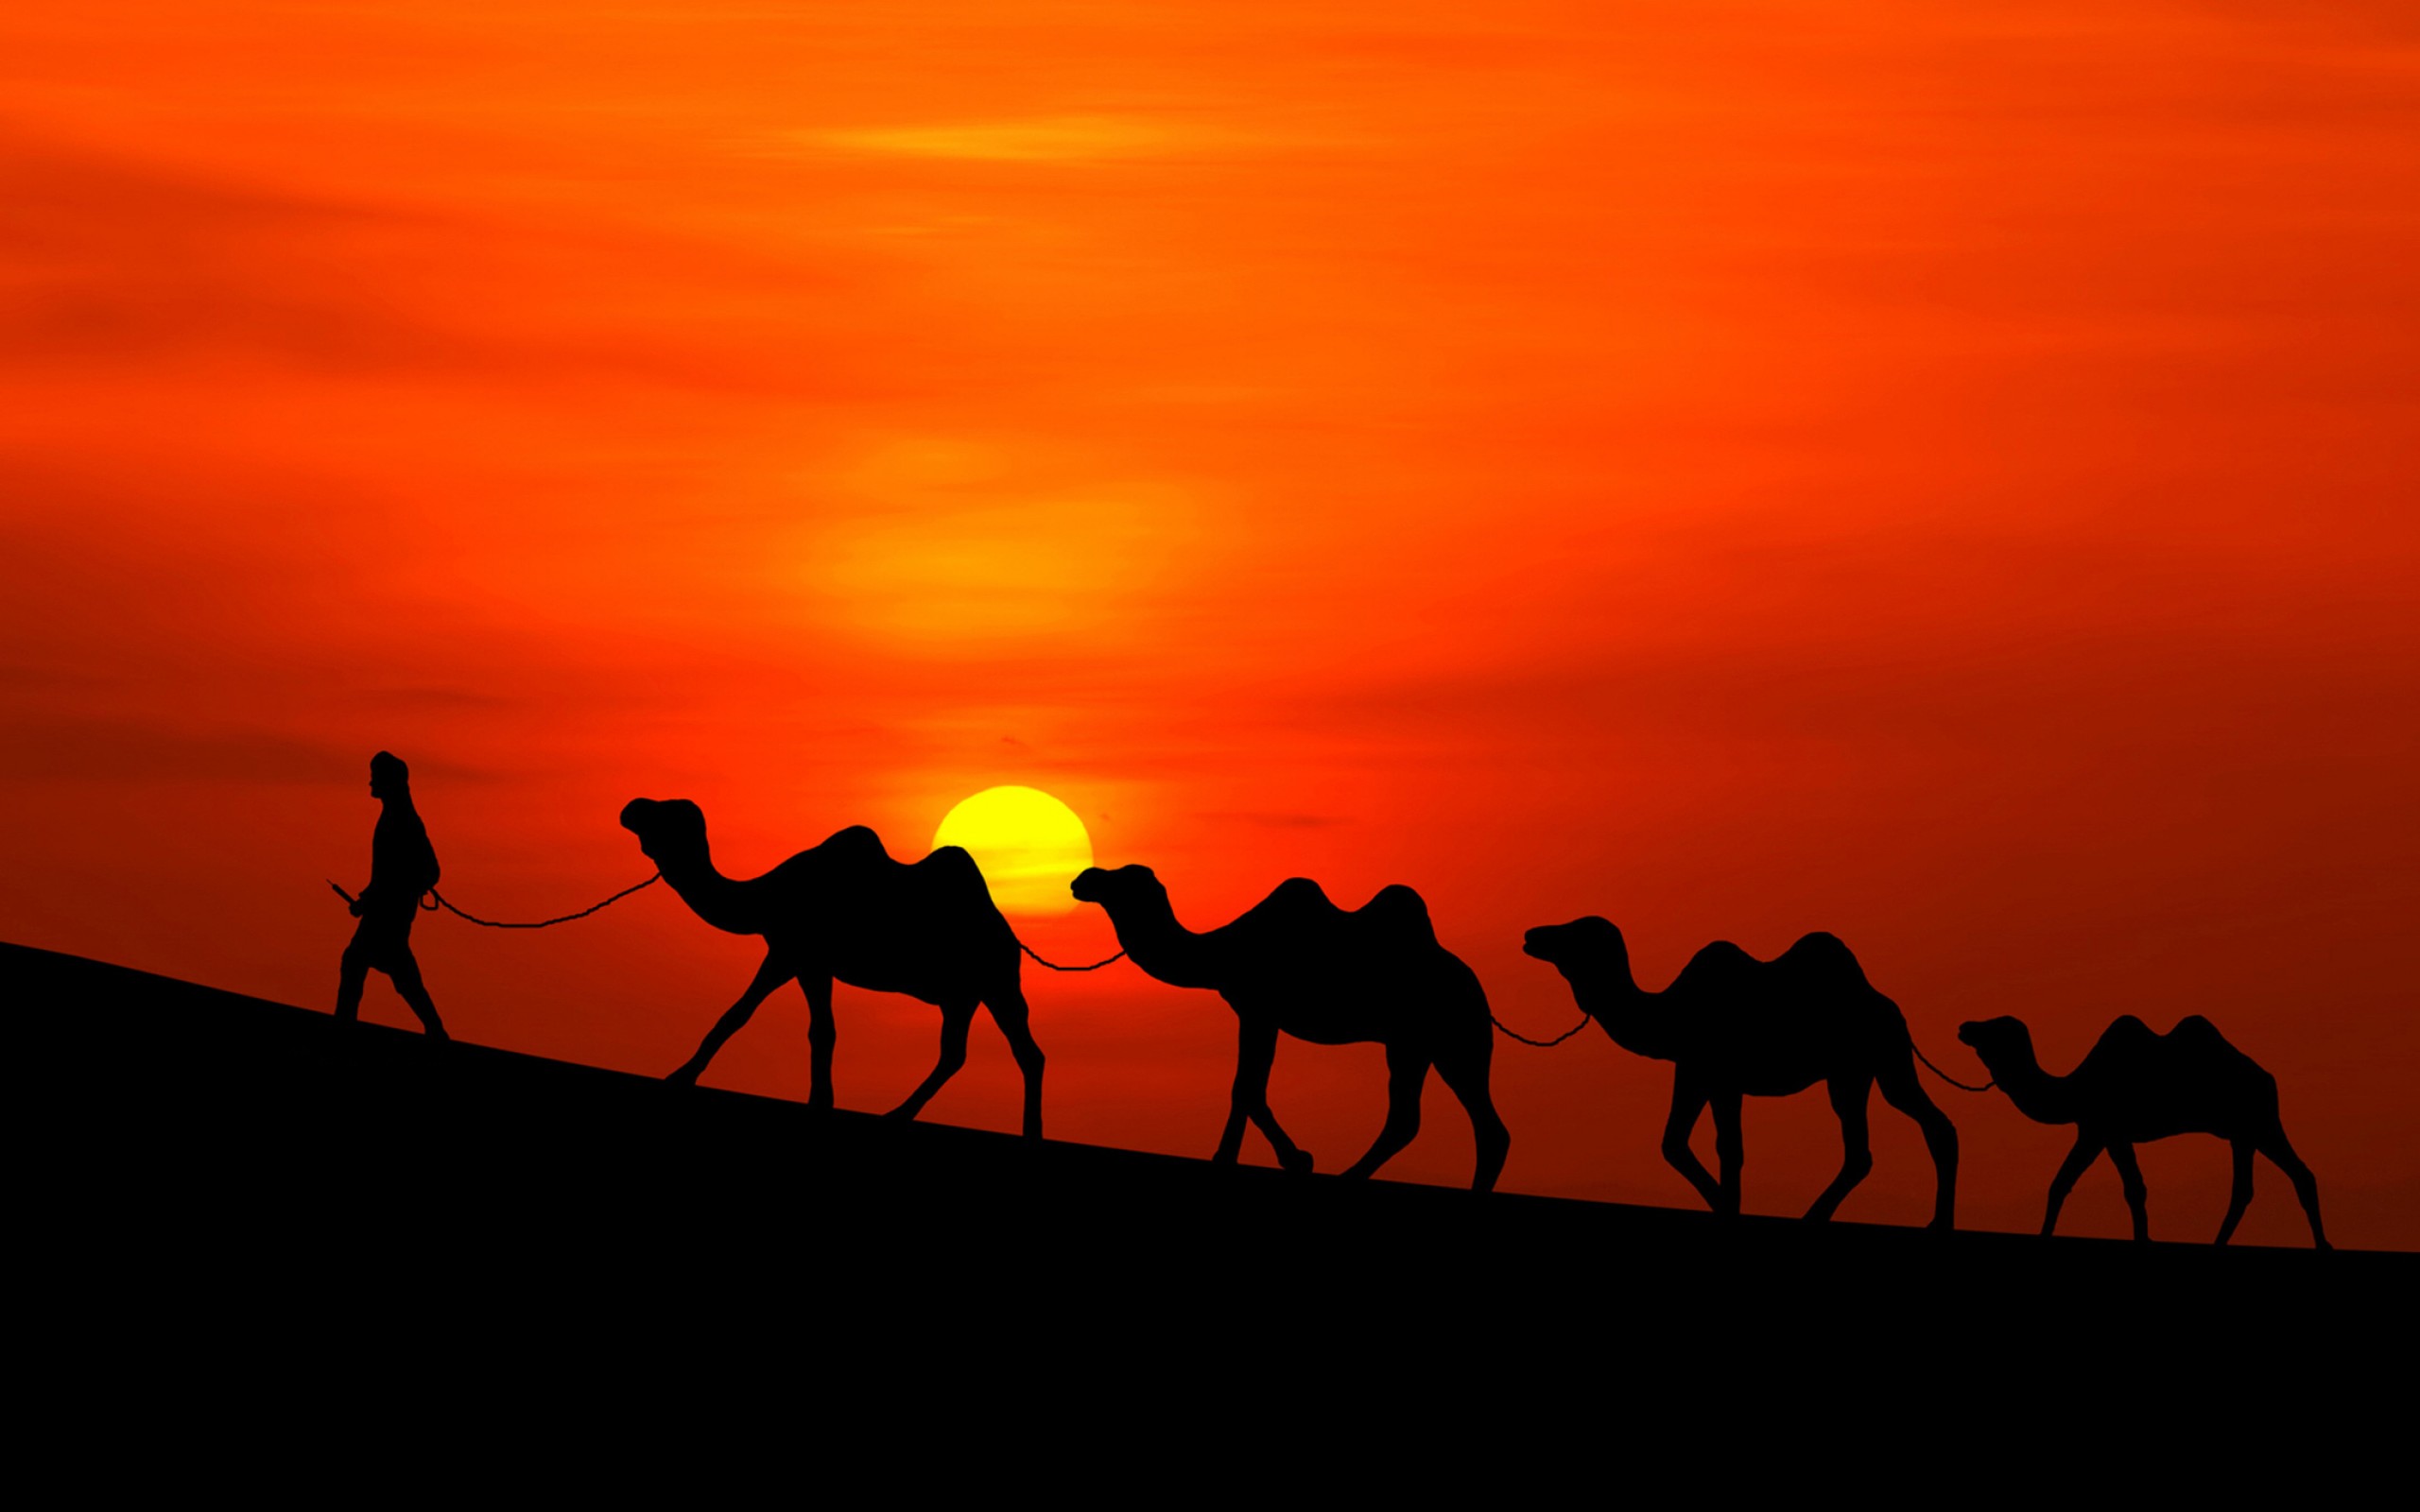 Название каравана. Великий шелковый путь Караван. Шелковый путь Караван верблюдов. Верблюд Караван пустыни. Верблюд в пустыне.